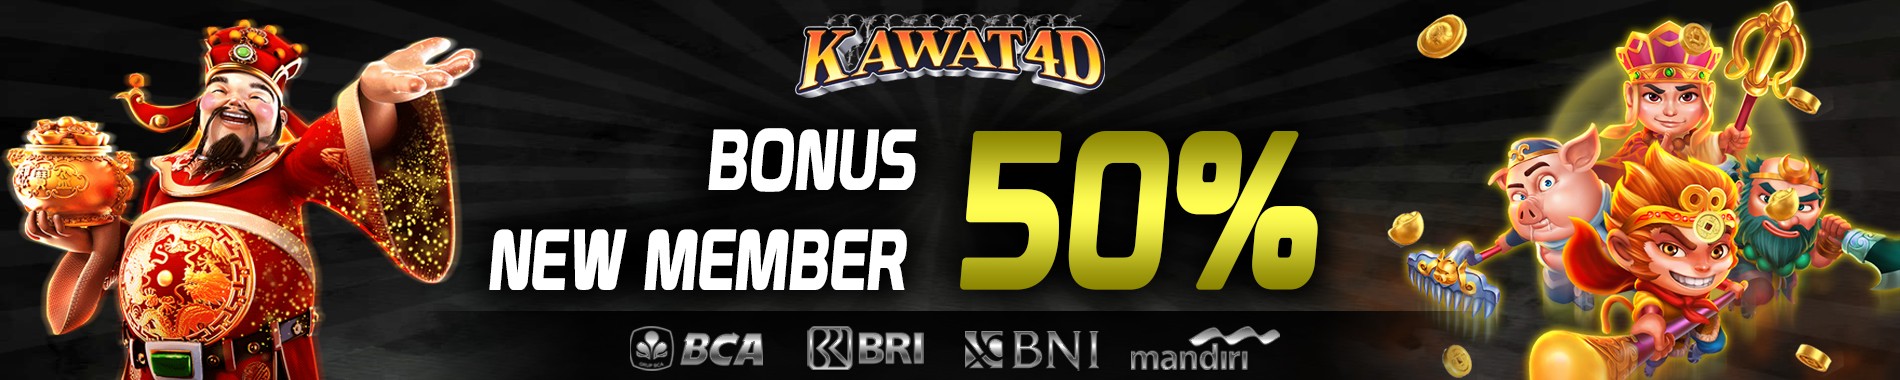 bonus new member kawat4d